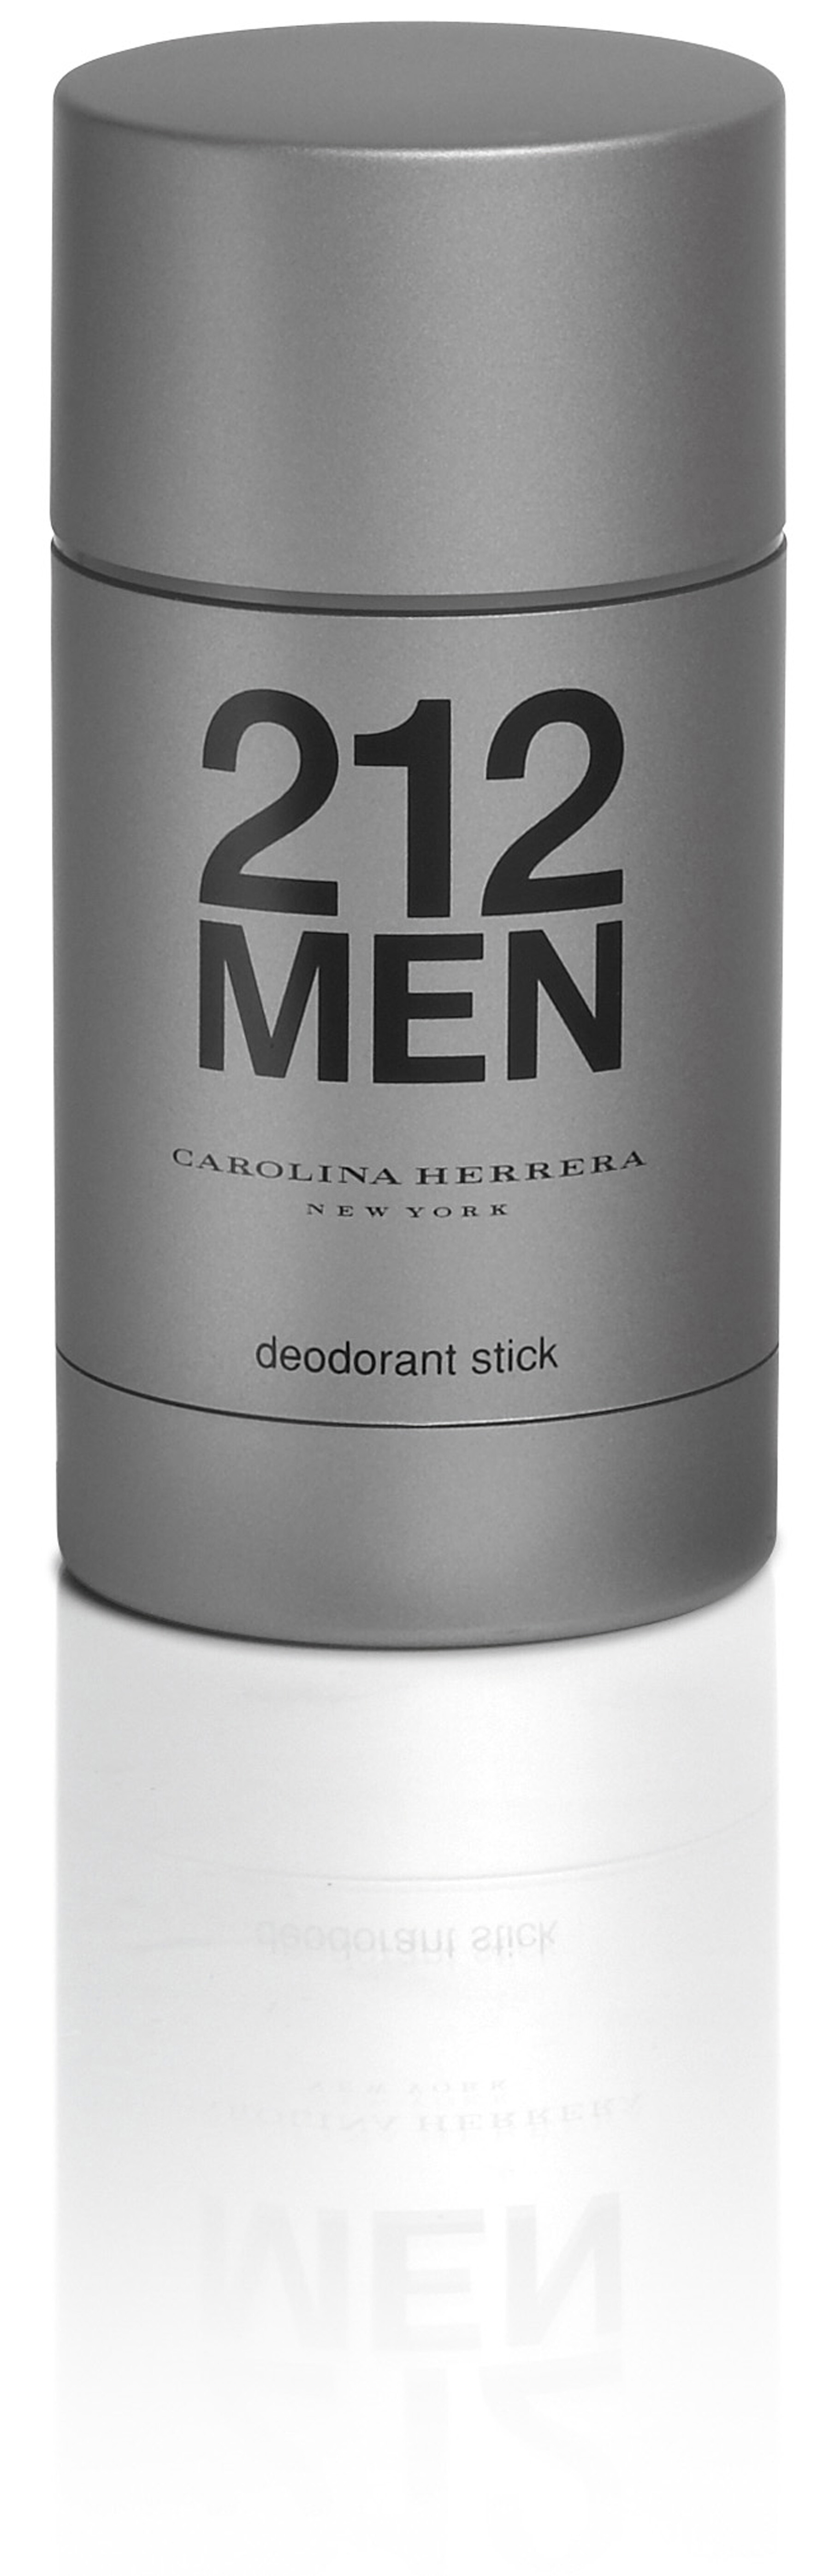 Deodorant Carolina Herrera 212 Men Deodorant Stick 75g kaufen